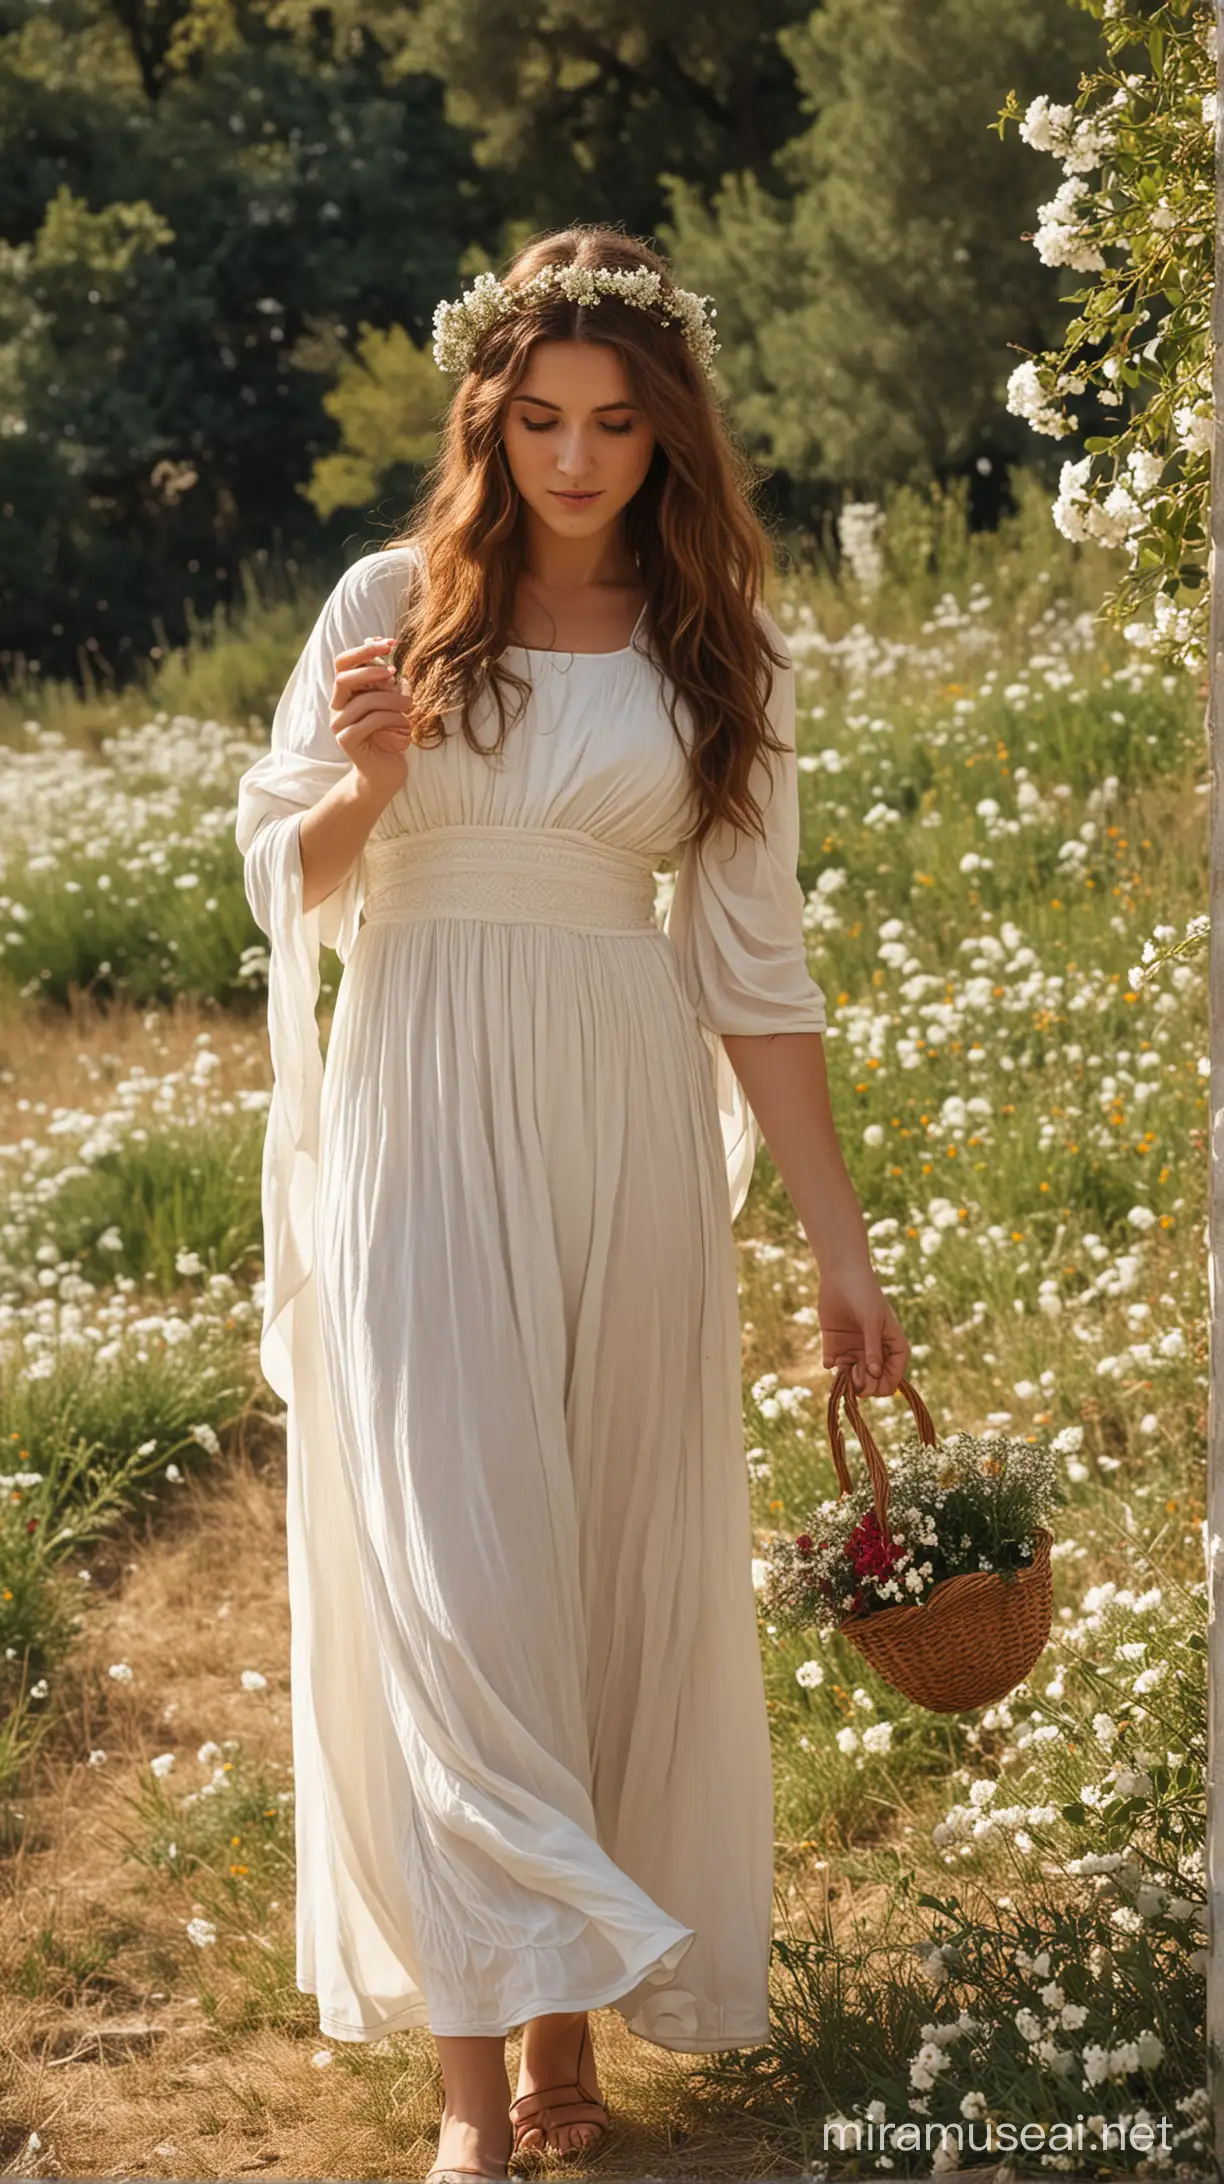 Persefone, cabello castaño, recogiendo flores, vestimenta griega